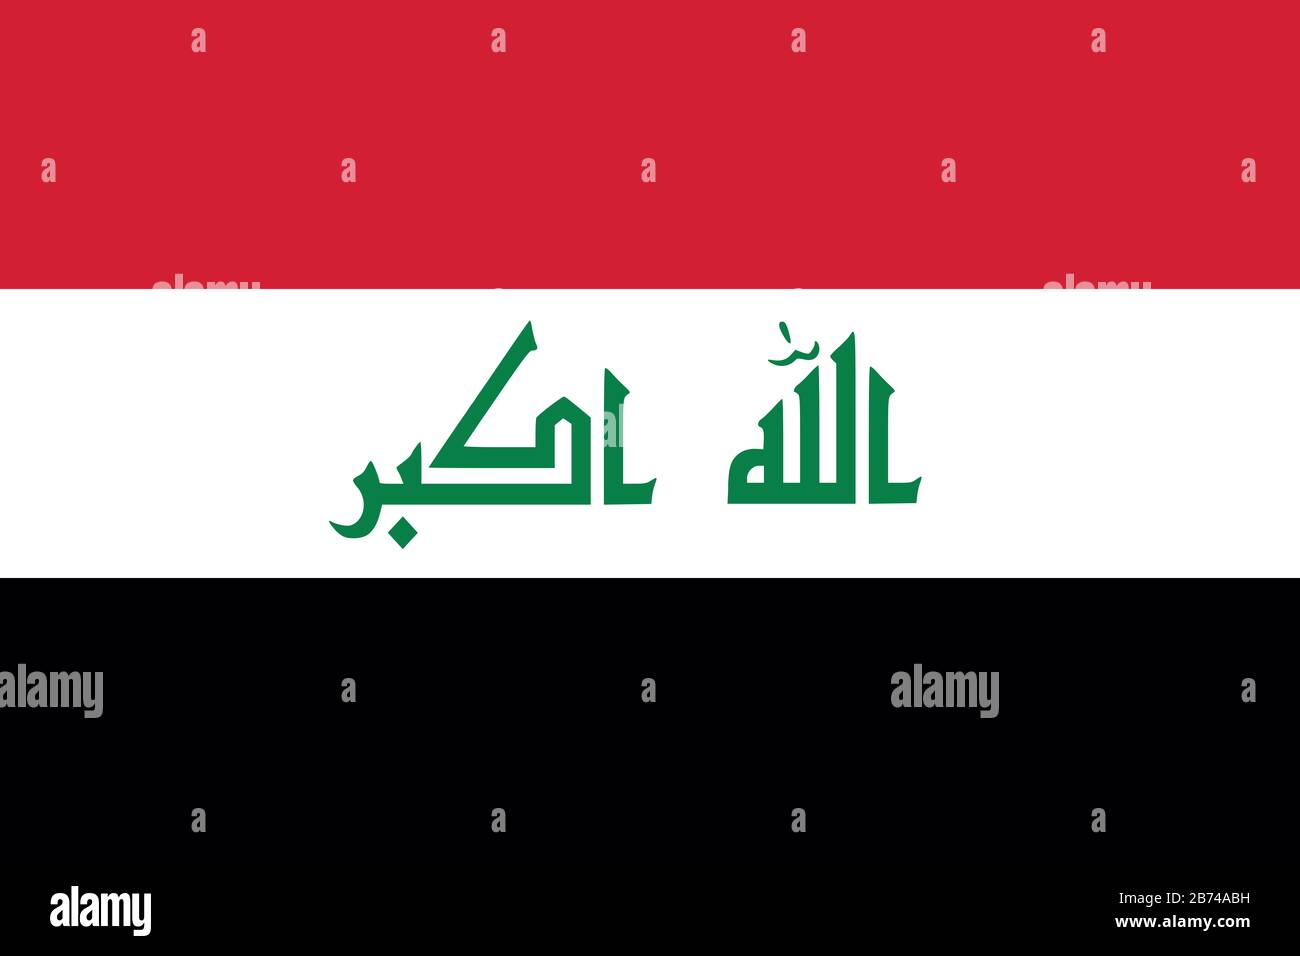 Flagge des Irak - Standardverhältnis der irakischen Flagge - True RGB-Farbmodus Stockfoto